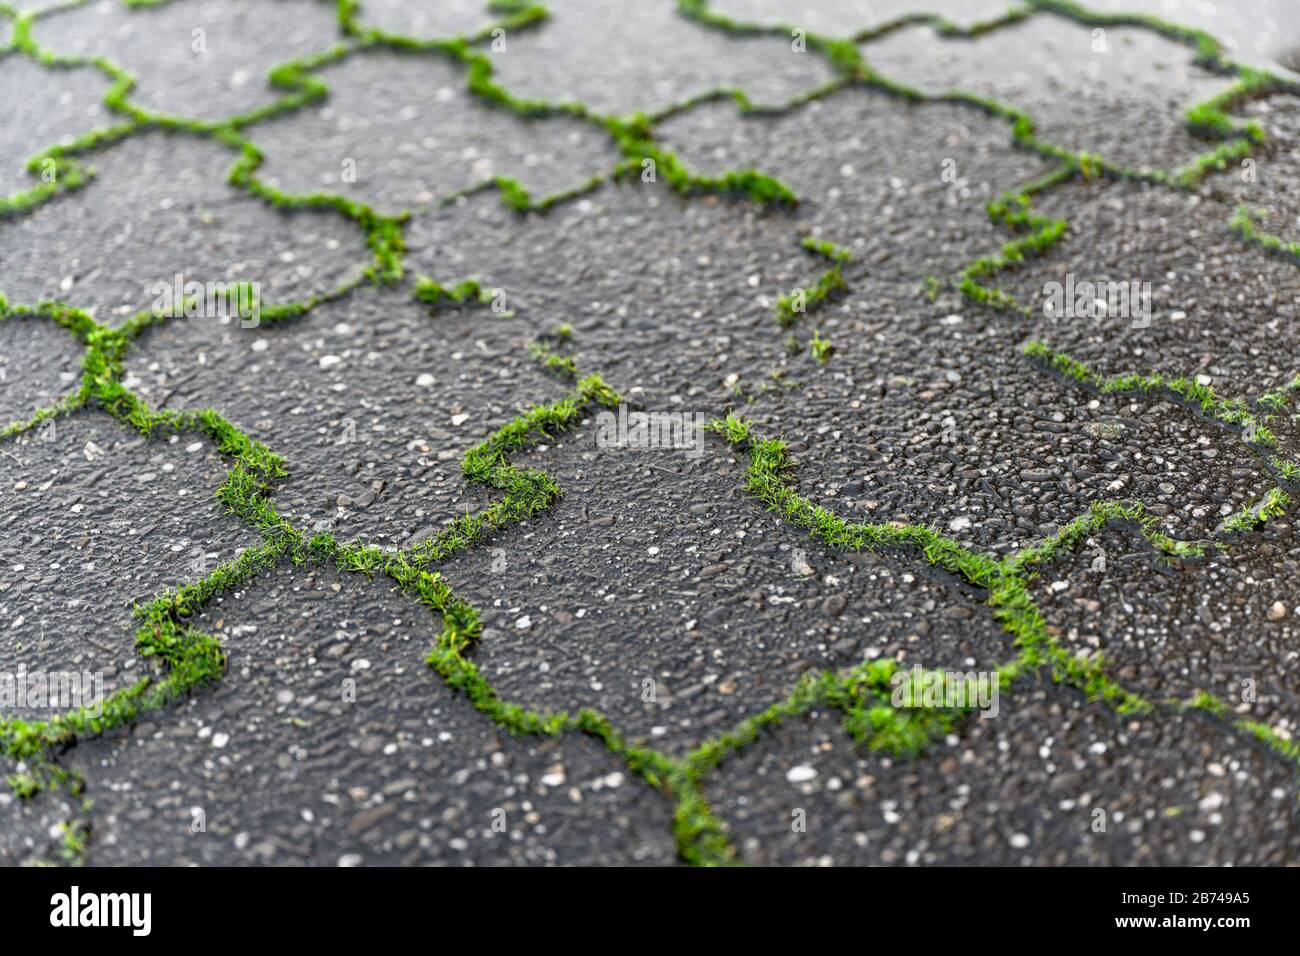 Grünes Unkraut wächst aus den Gelenken von grauen nassen Betonpflastersteinen, die in der Nähe zu sehen sind. Stockfoto